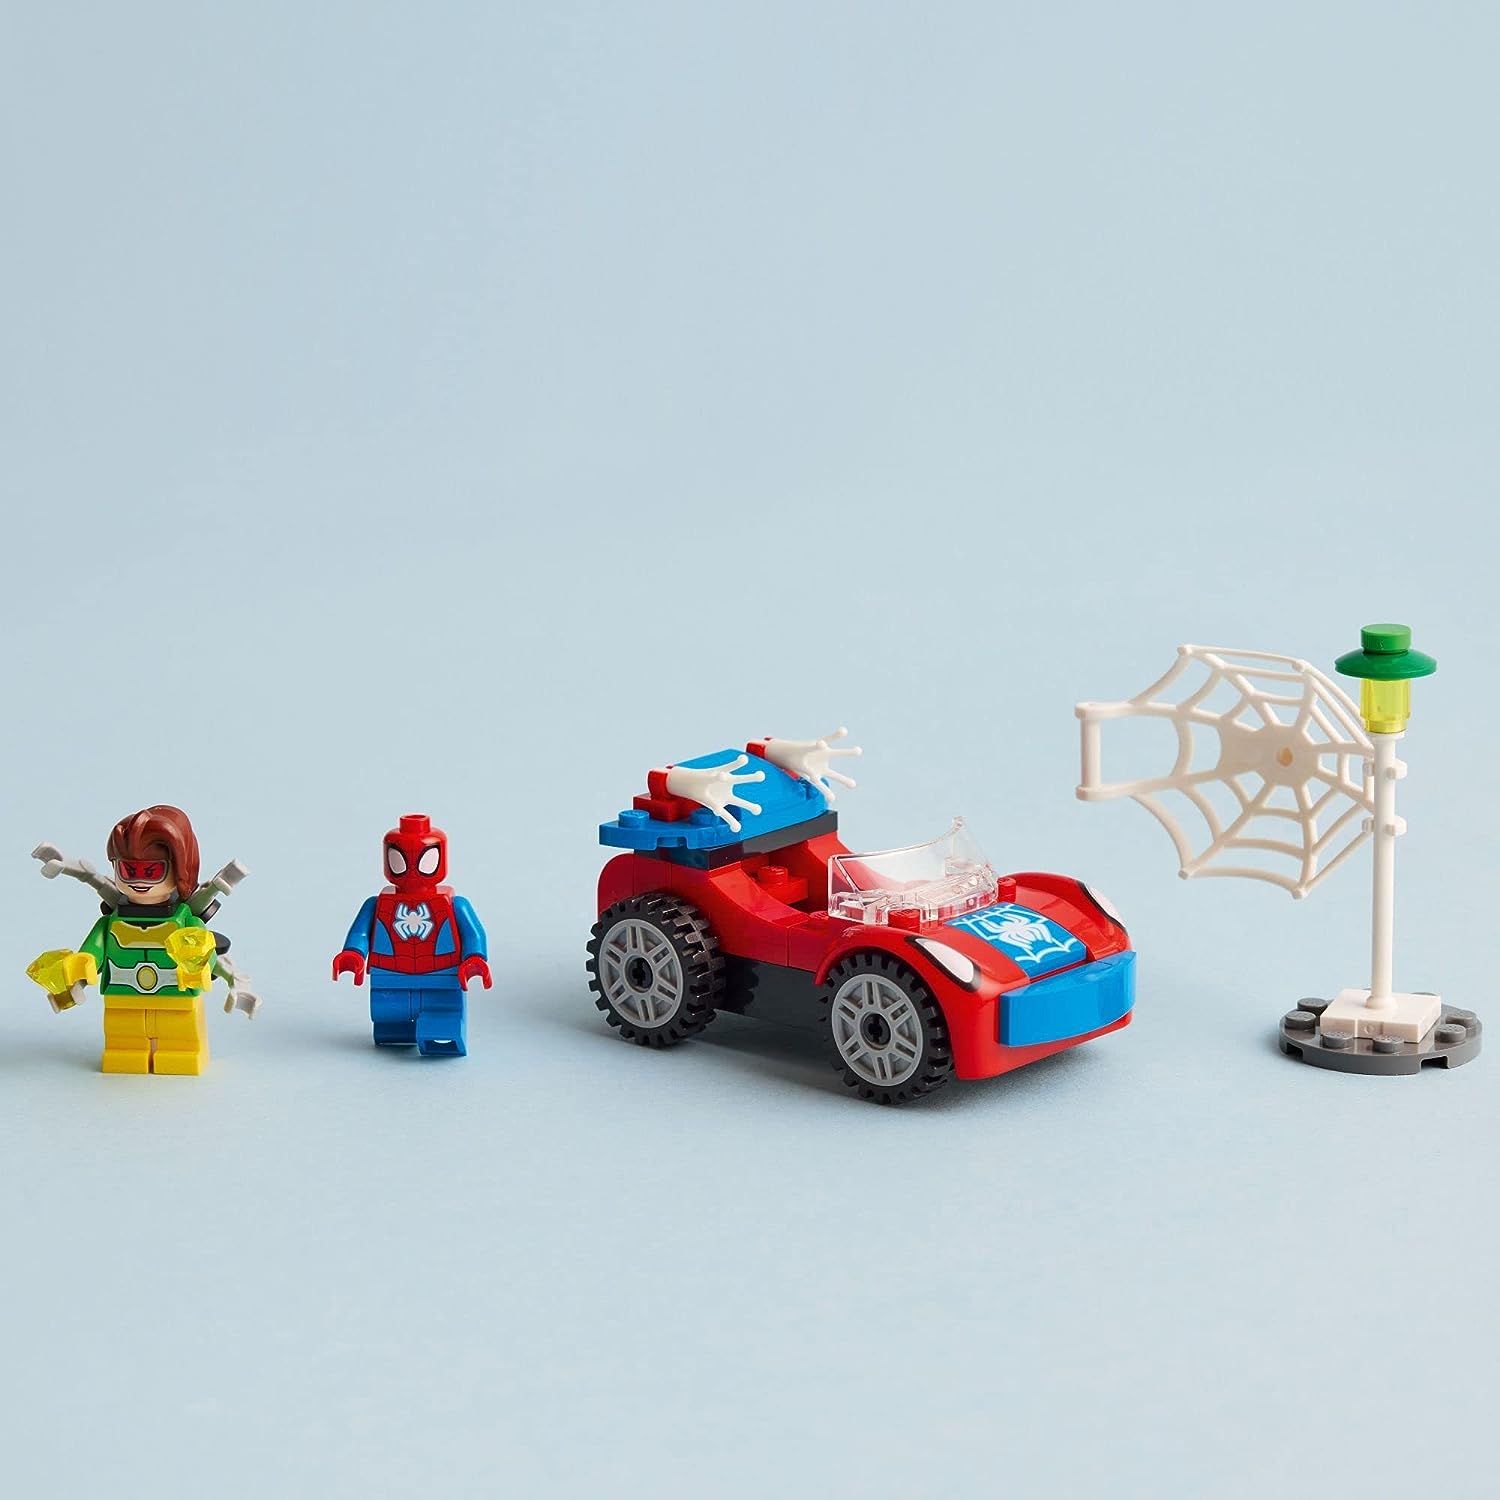 ليجو 10789 مجموعة سيارة مارفل سبايدر مان ودوك اوك، سبايدي وأصدقائه المذهلين، لعبة قابلة للبناء للأطفال من عمر 4 سنوات فما فوق مع قطع متوهجة في الظلام